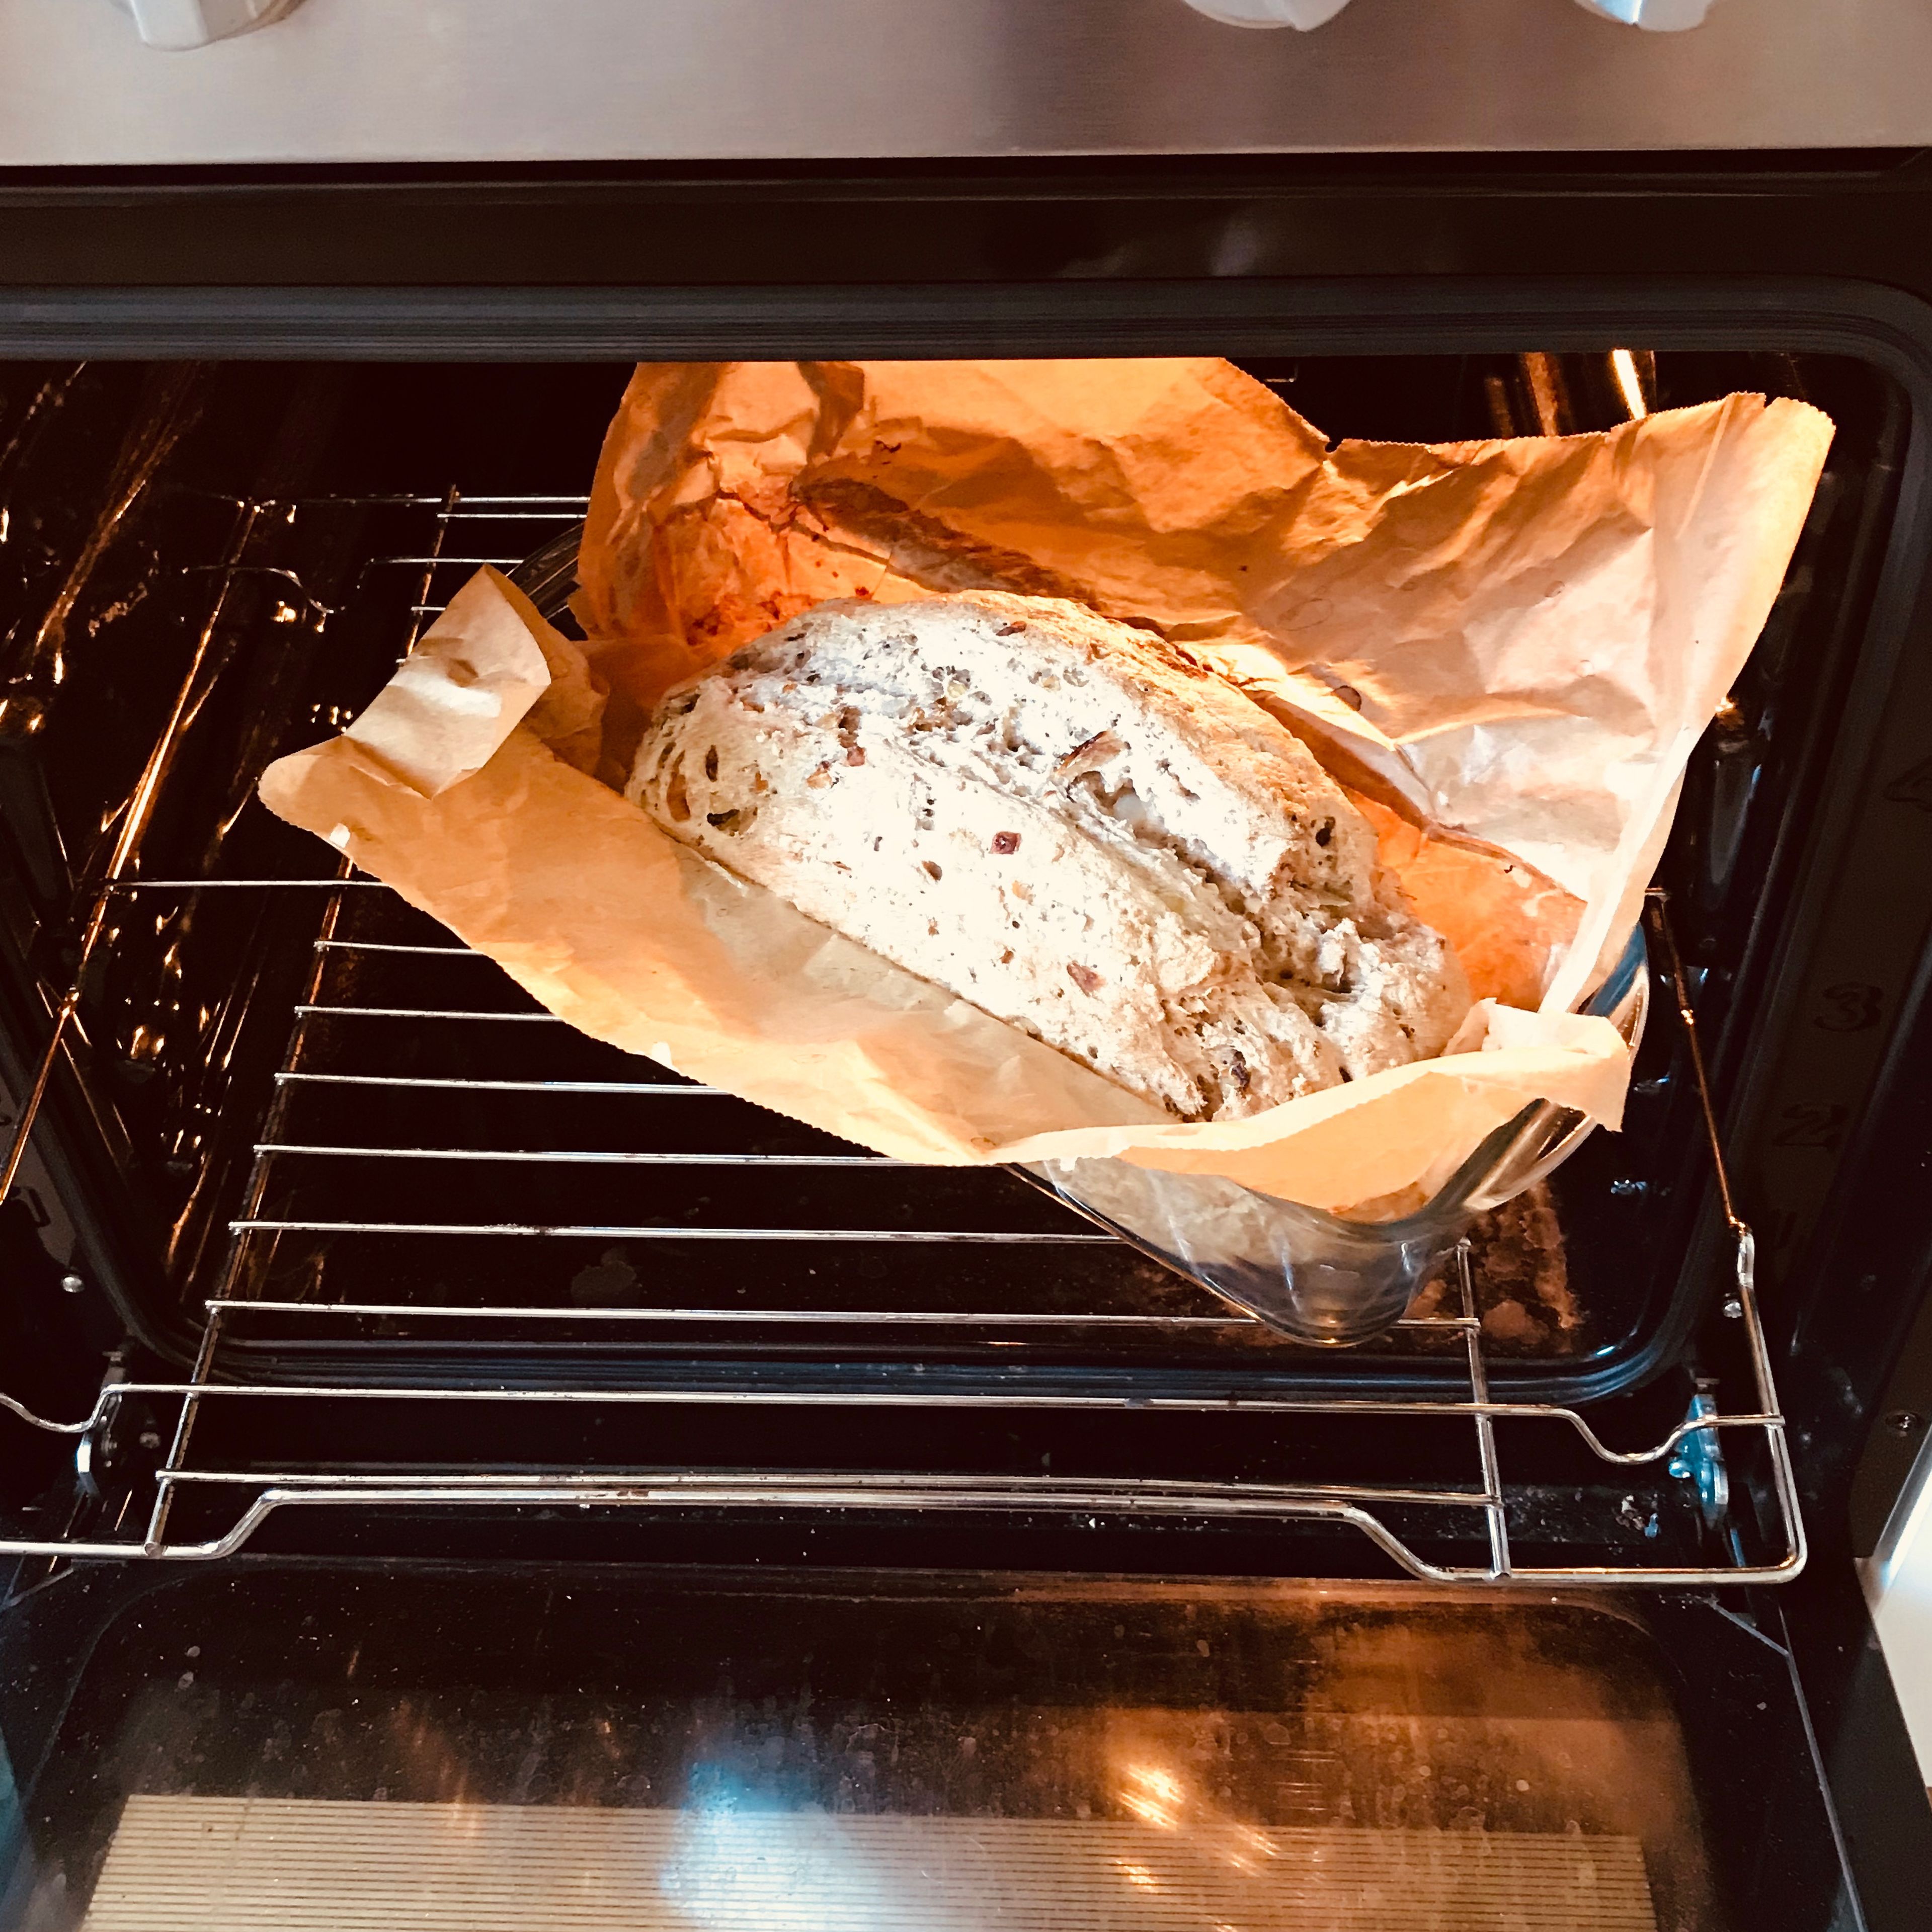 Mit Hilfe der Stäbchenprobe kontrollieren, ob das Brot fertig ist. Es sollte leicht gebräunt sein. Dann das Brot aus dem Backofen nehmen, abkühlen lassen und genießen.